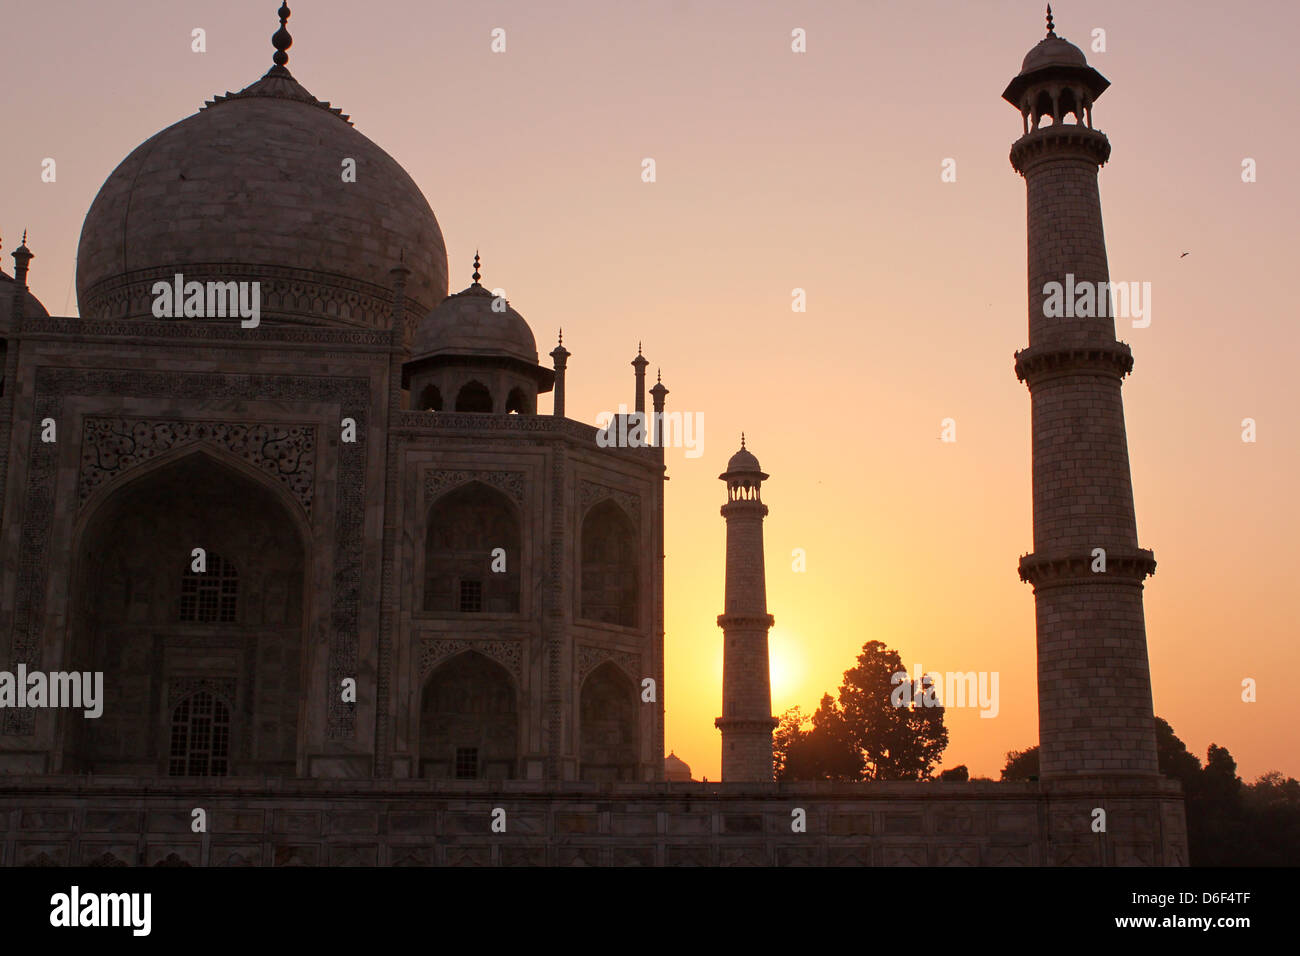 Lever du soleil sur le Taj Mahal, site du patrimoine mondial de l'Agra, Uttar Pradesh, Inde Banque D'Images